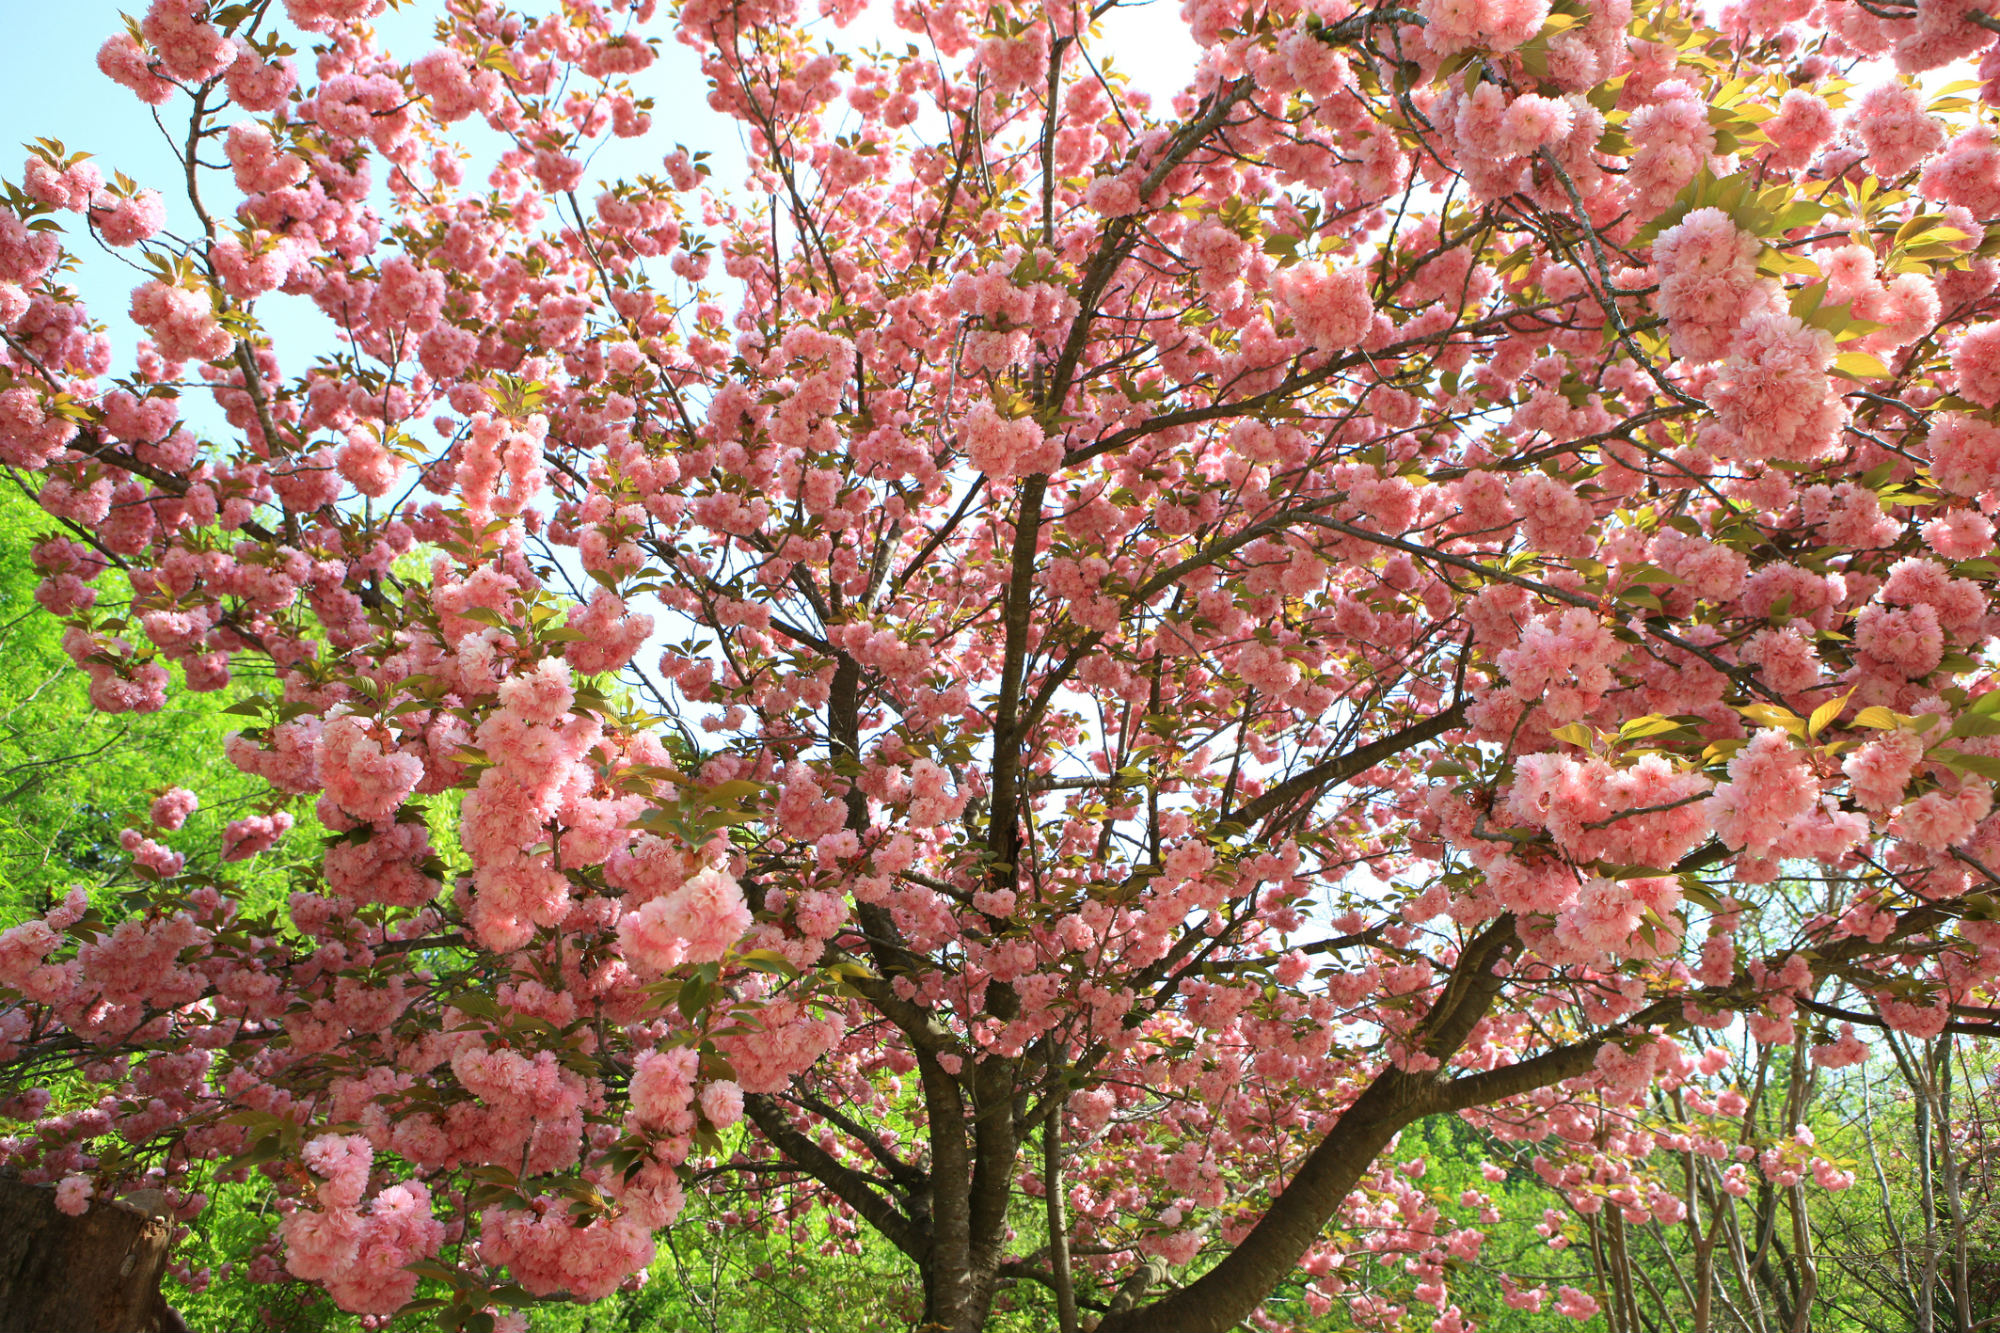 цветение вишни в корее